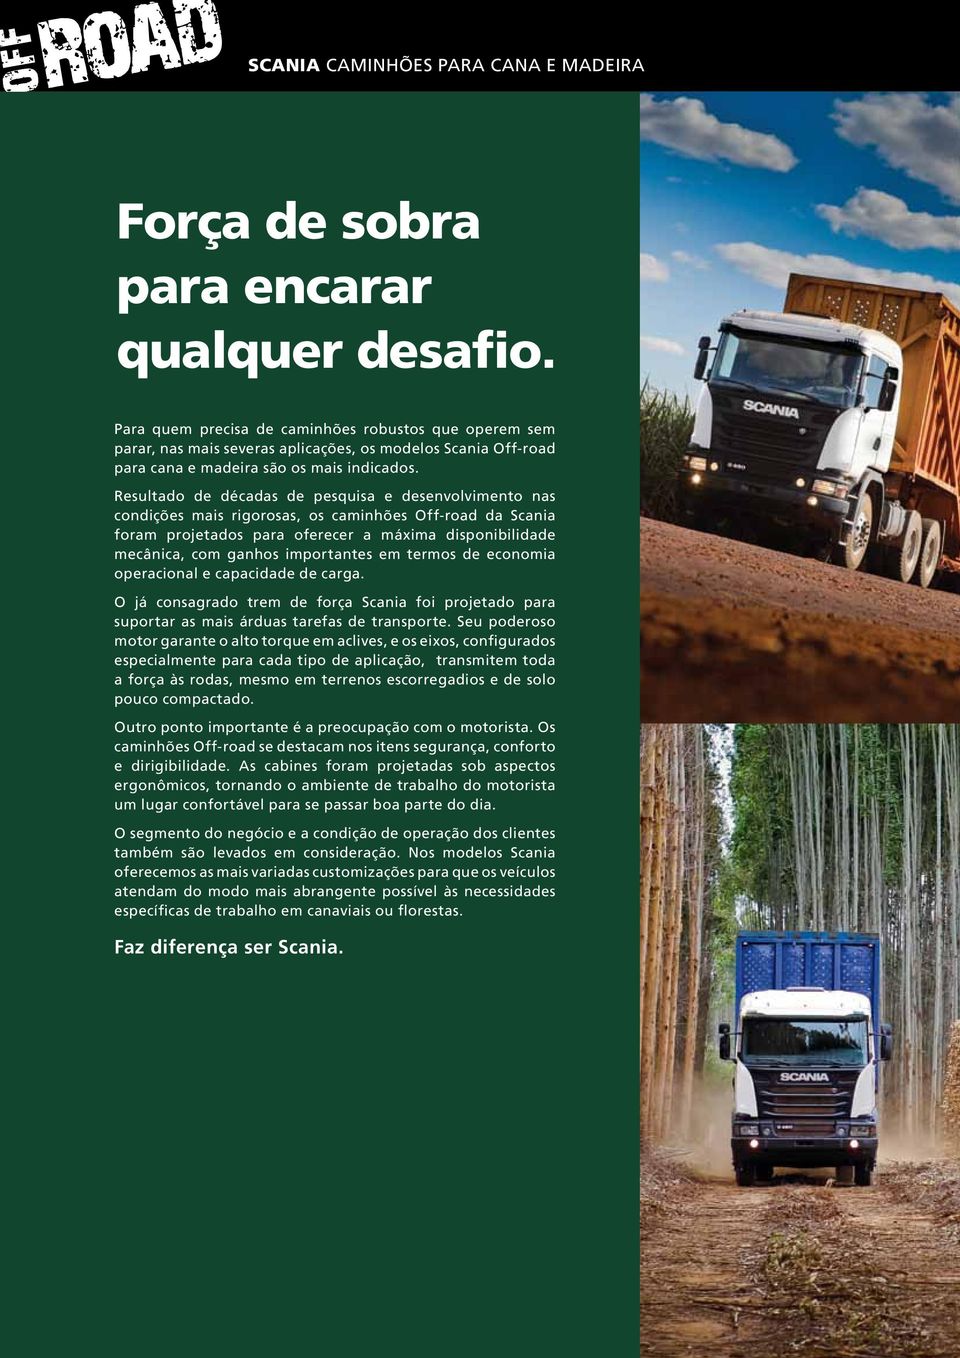 Resultado de décadas de pesquisa e desenvolvimento nas condições mais rigorosas, os caminhões Off-road da Scania foram projetados para oferecer a máxima disponibilidade mecânica, com ganhos